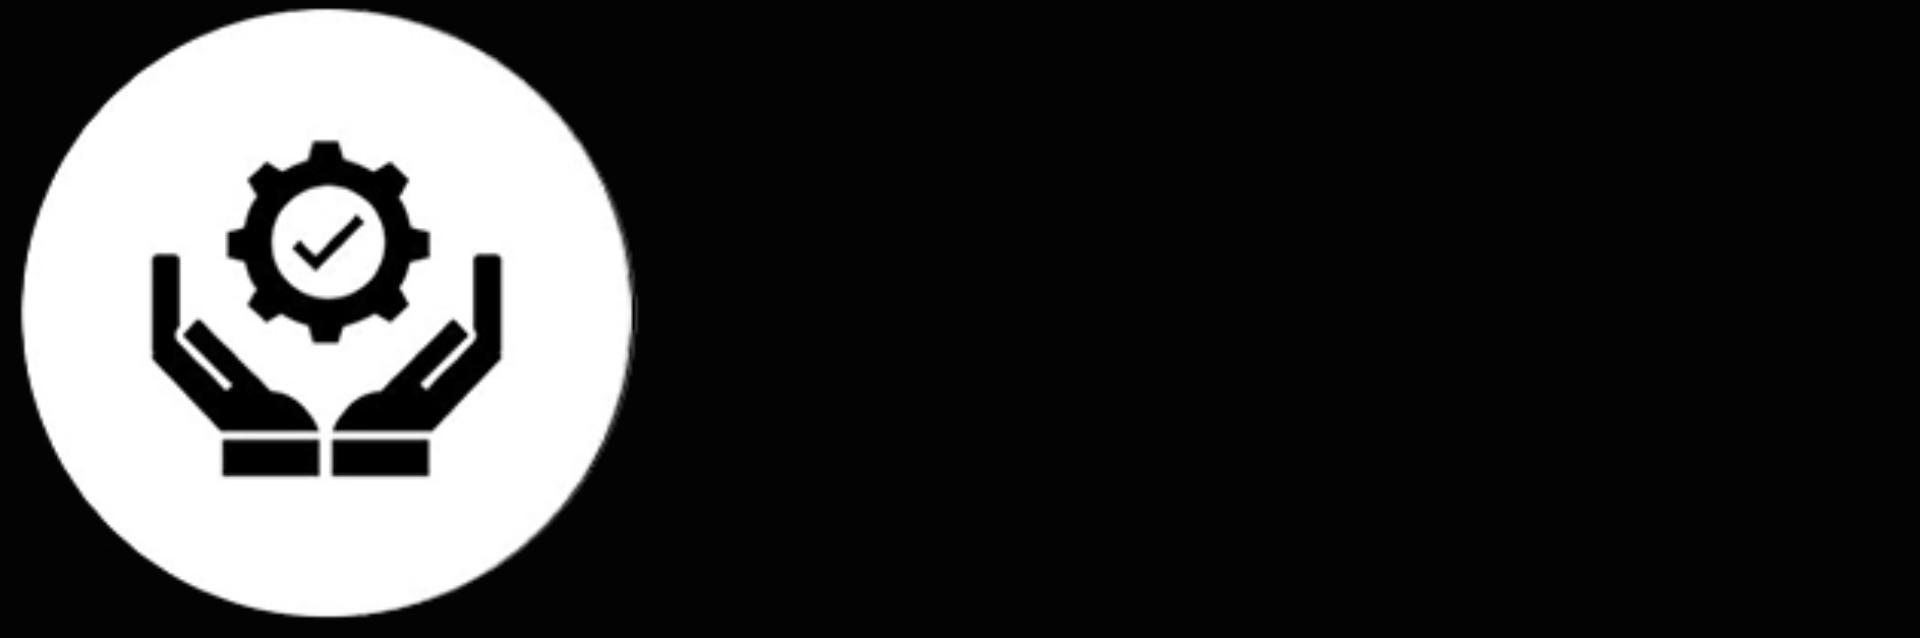 סמל שחור לבן של ידיים אוחזות בעיגול עם סימון V באמצע.